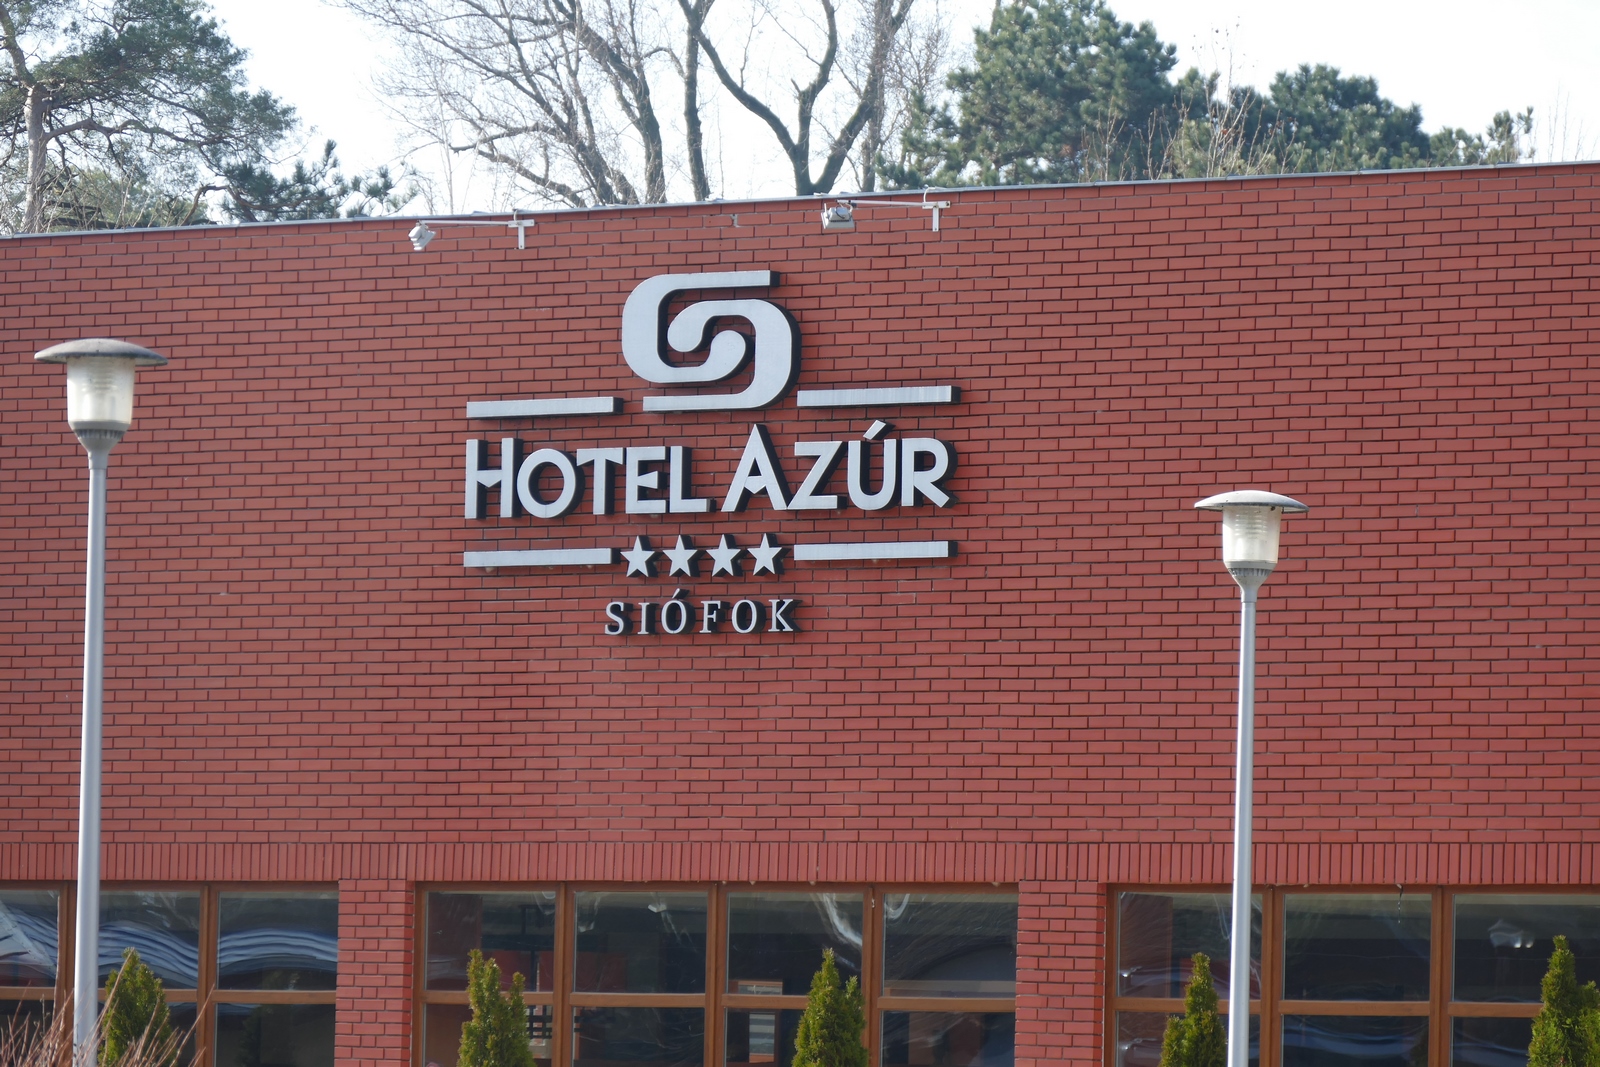 Hotel Azur in Siofok-Ungarn